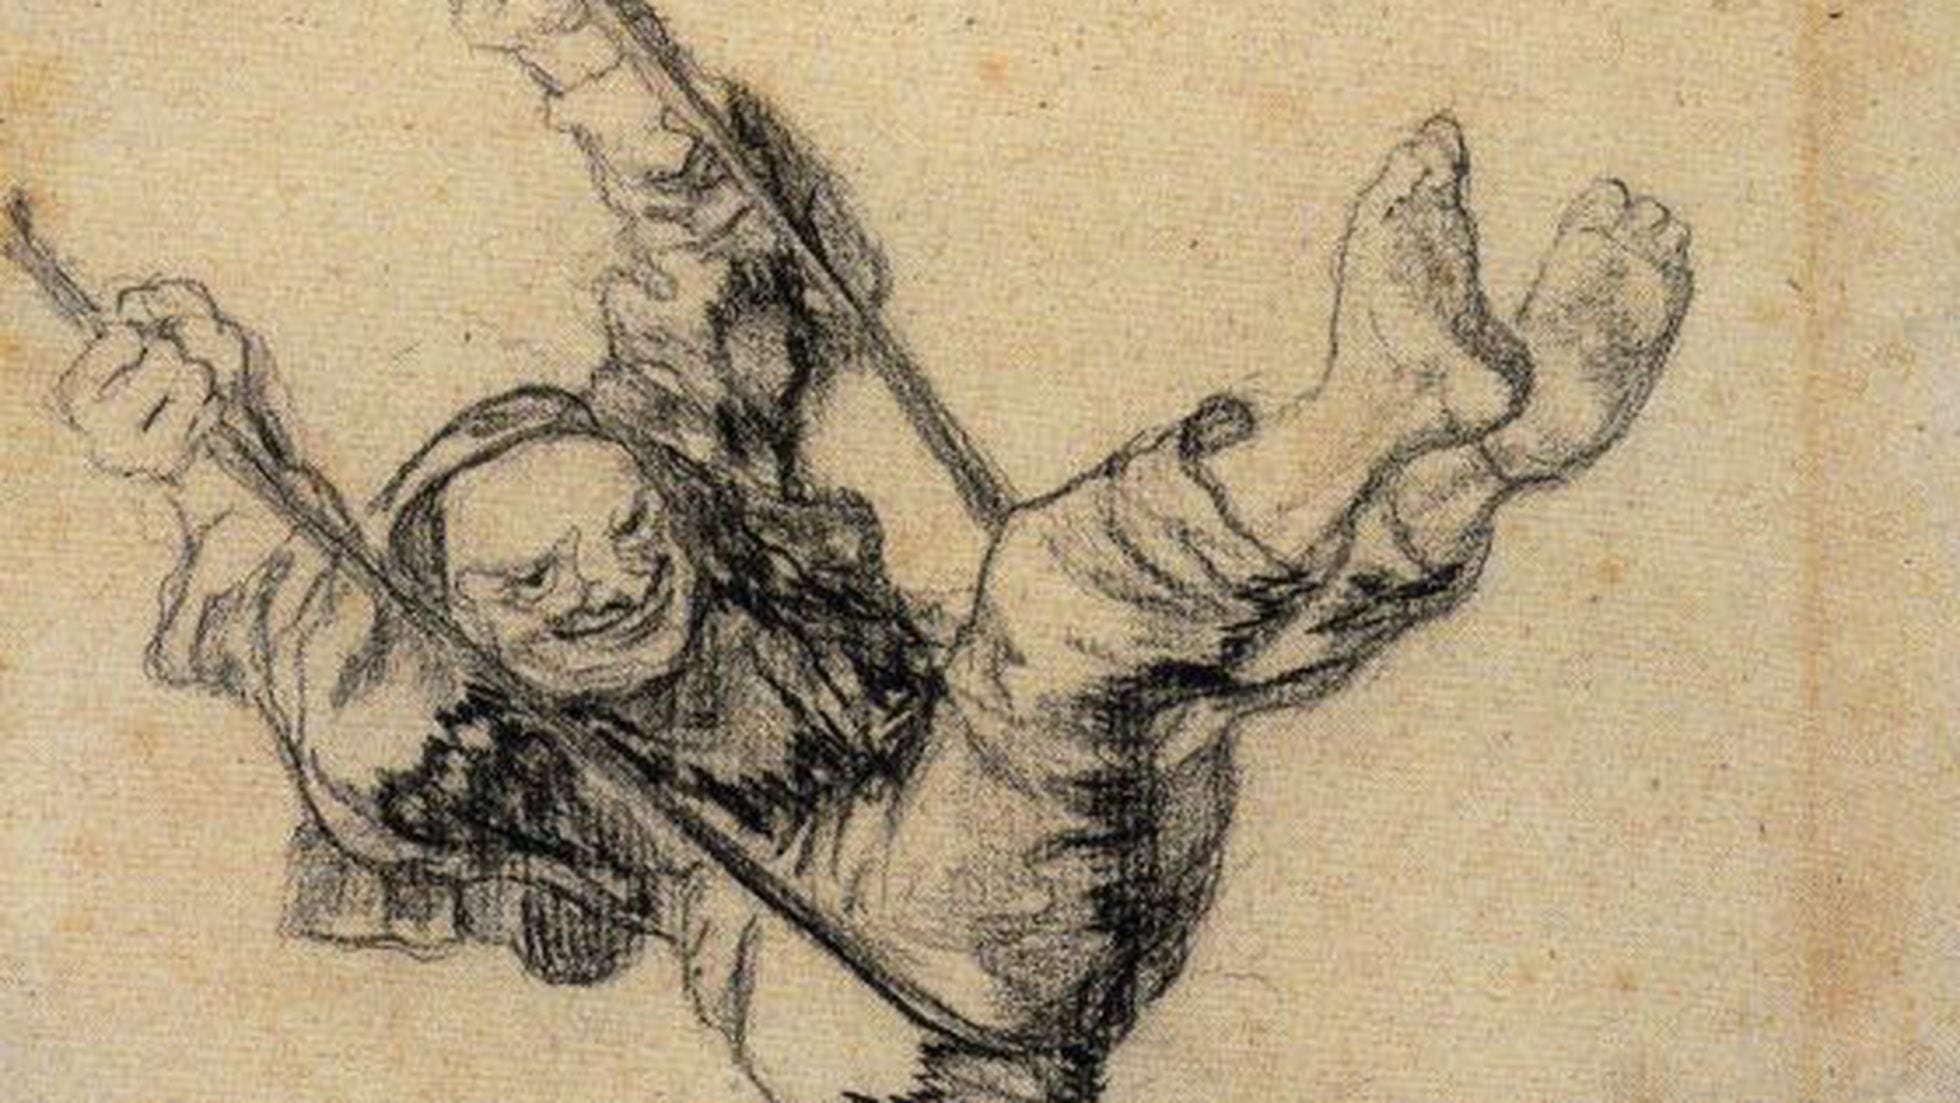  dibujos de Goya, catalogados y razonados | Cultura | EL PAÍS